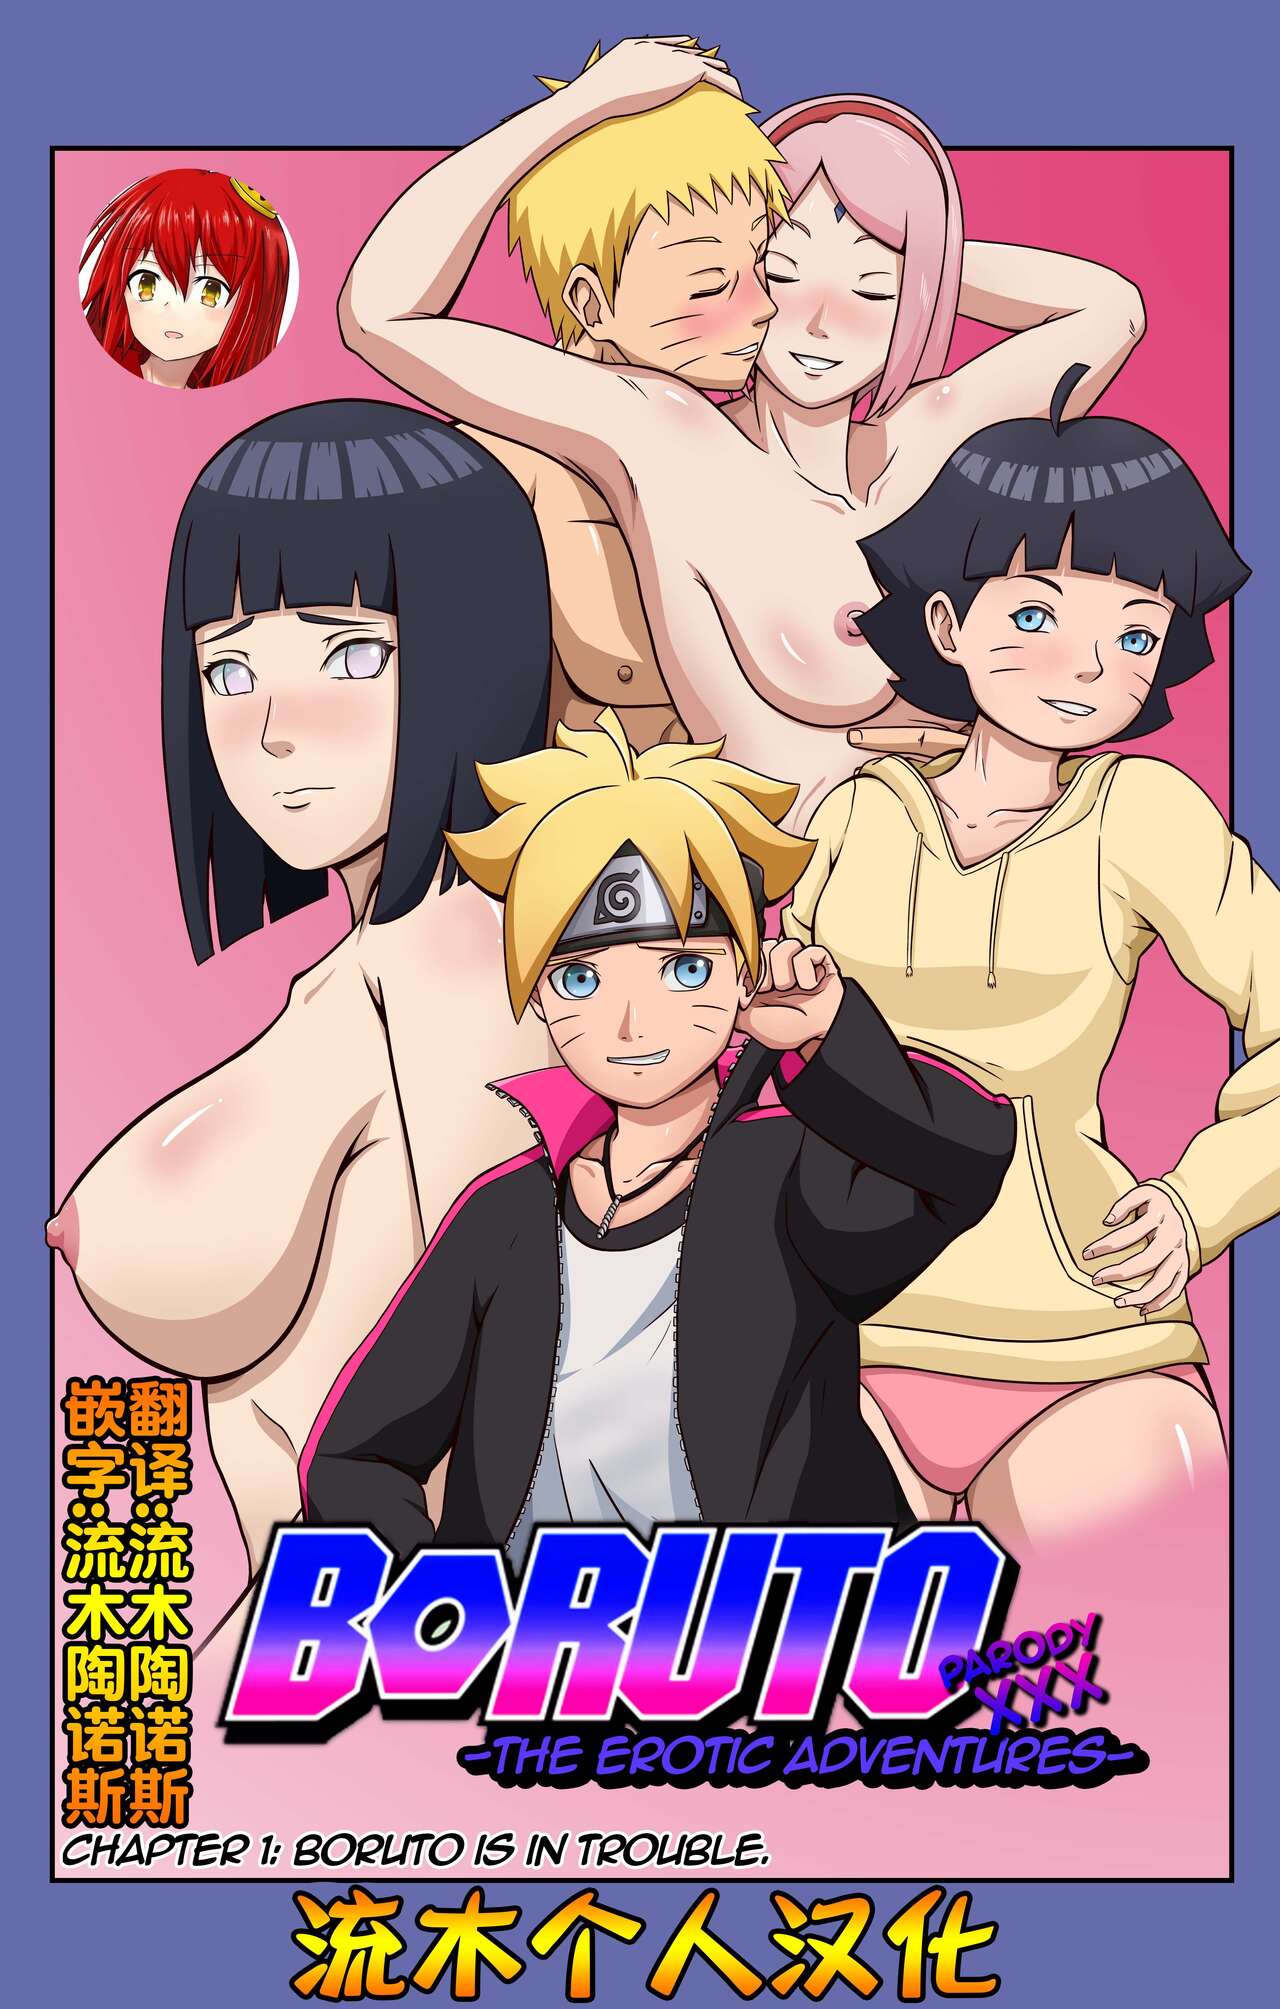 [Yutto Prime] Boruto Erotic Adventure chapter1:Boruto is in trouble[流木个人汉化] [Yutto Prime] Boruto Erotic Adventure chapter1:Boruto is in trouble[流木个人汉化]